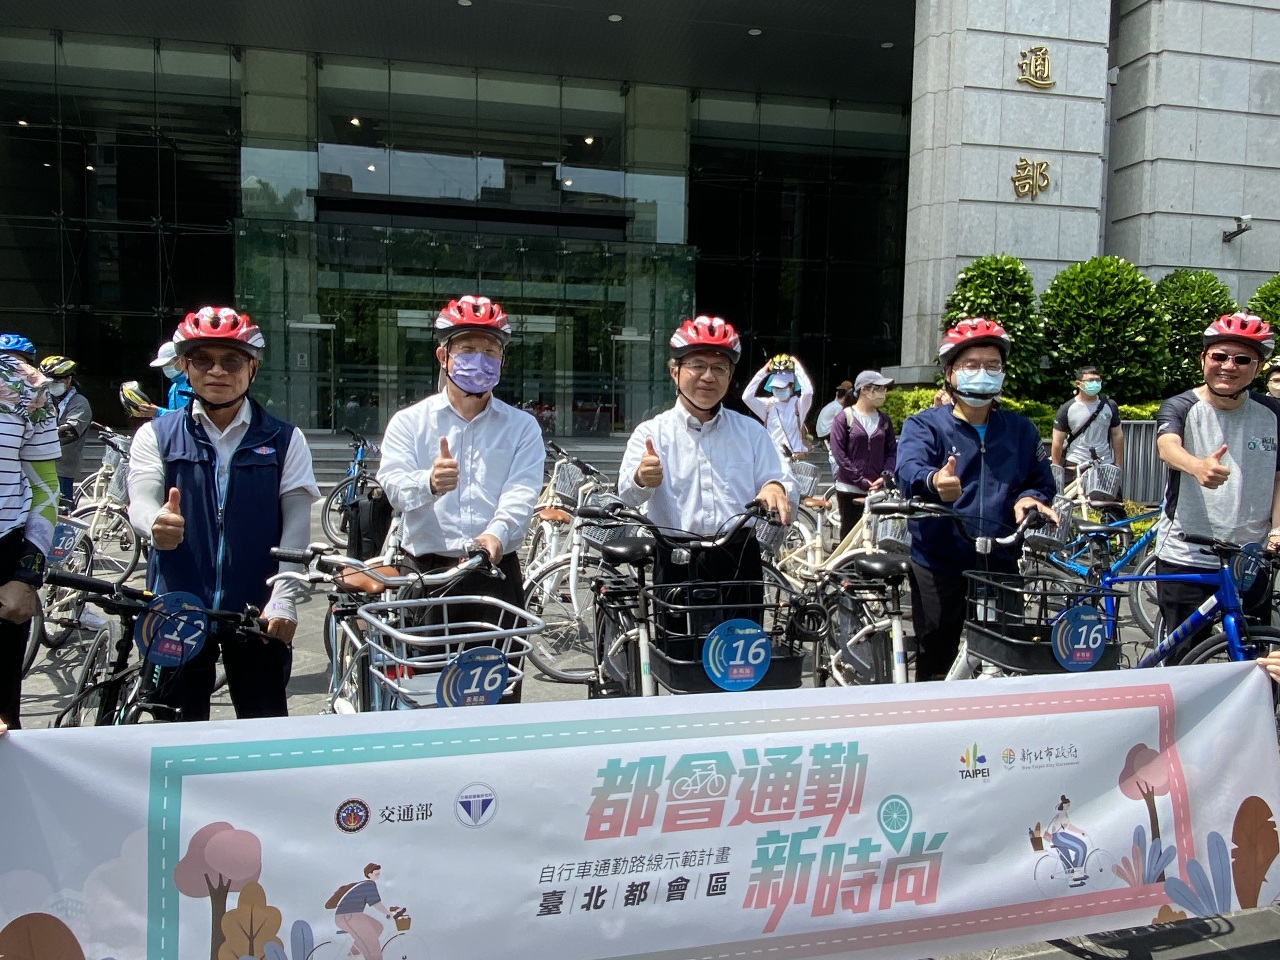 讓大台北河濱成自行車高速公路 交通部發表示範計畫